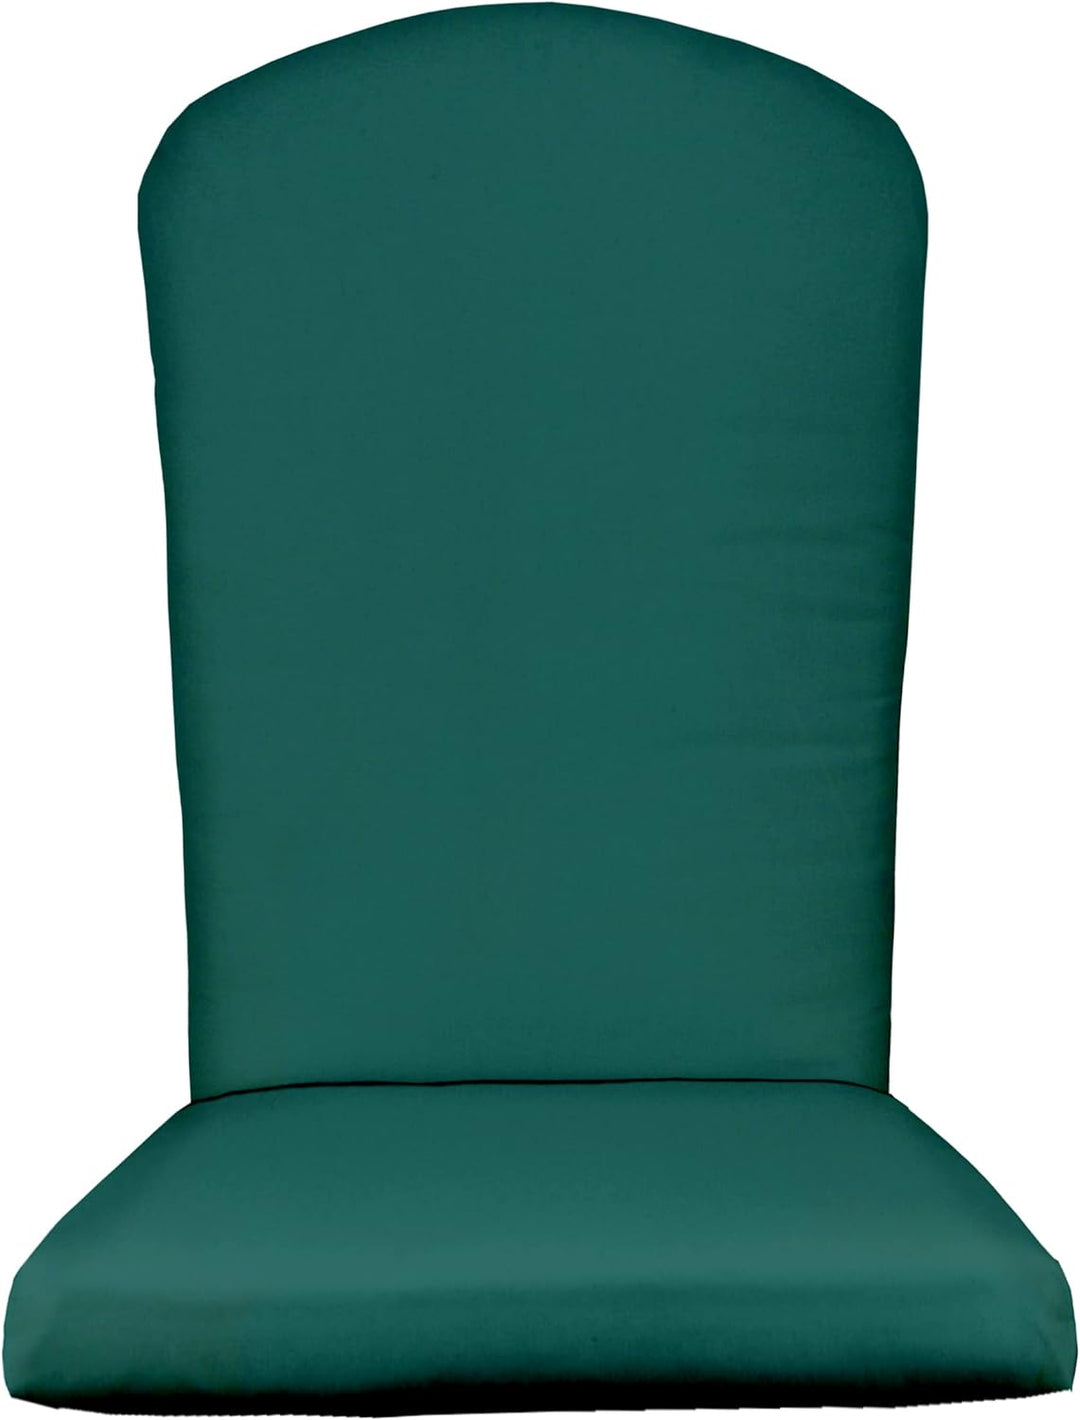 Foam Adirondack Cushion | 48” H x 20” W x 2" Thick | Peacock | SUMMER FLASH SALE - RSH Decor